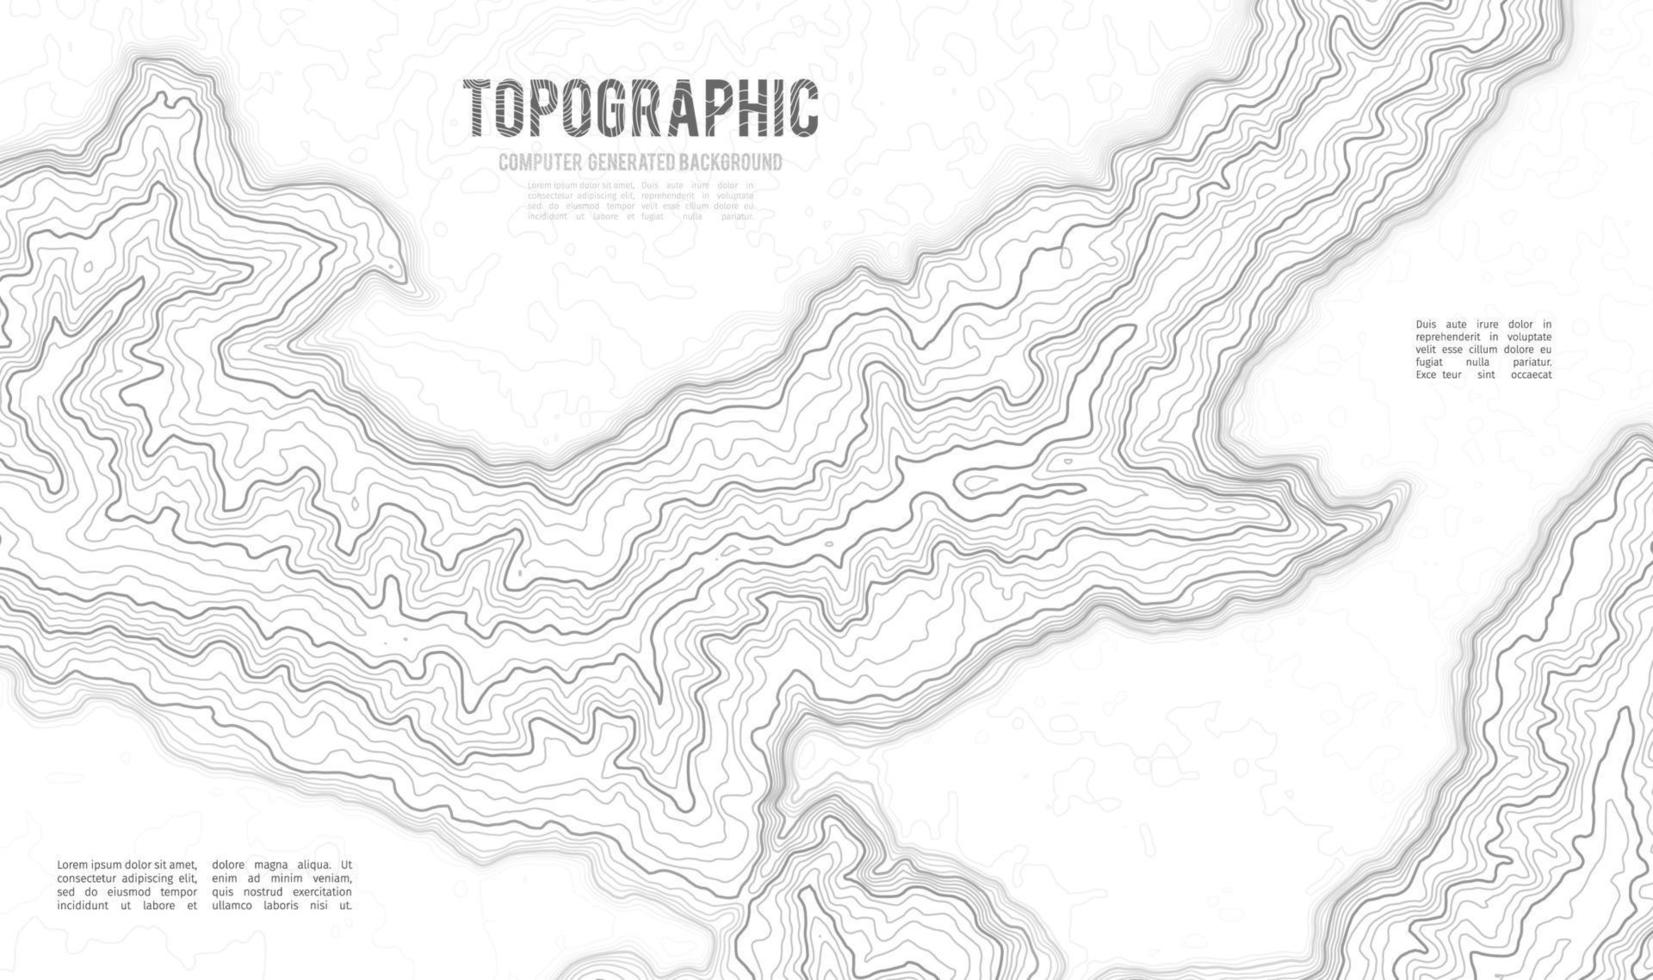 fondo de contorno del mapa topográfico. mapa topográfico con elevación. vector de mapa de contorno. Ilustración de vector abstracto de cuadrícula de mapa de topografía mundial geográfica.